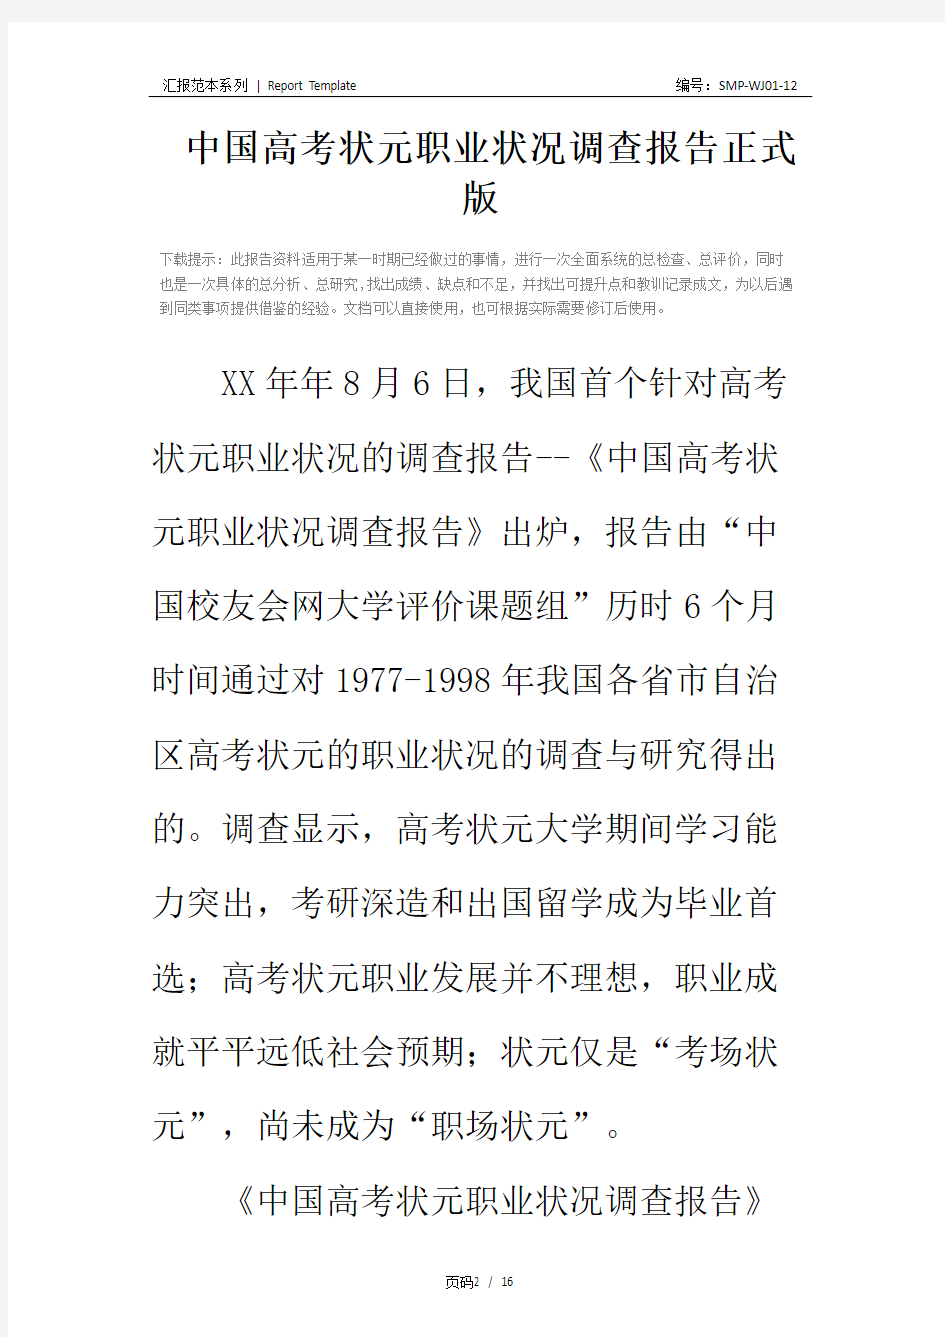 中国高考状元职业状况调查报告正式版_2